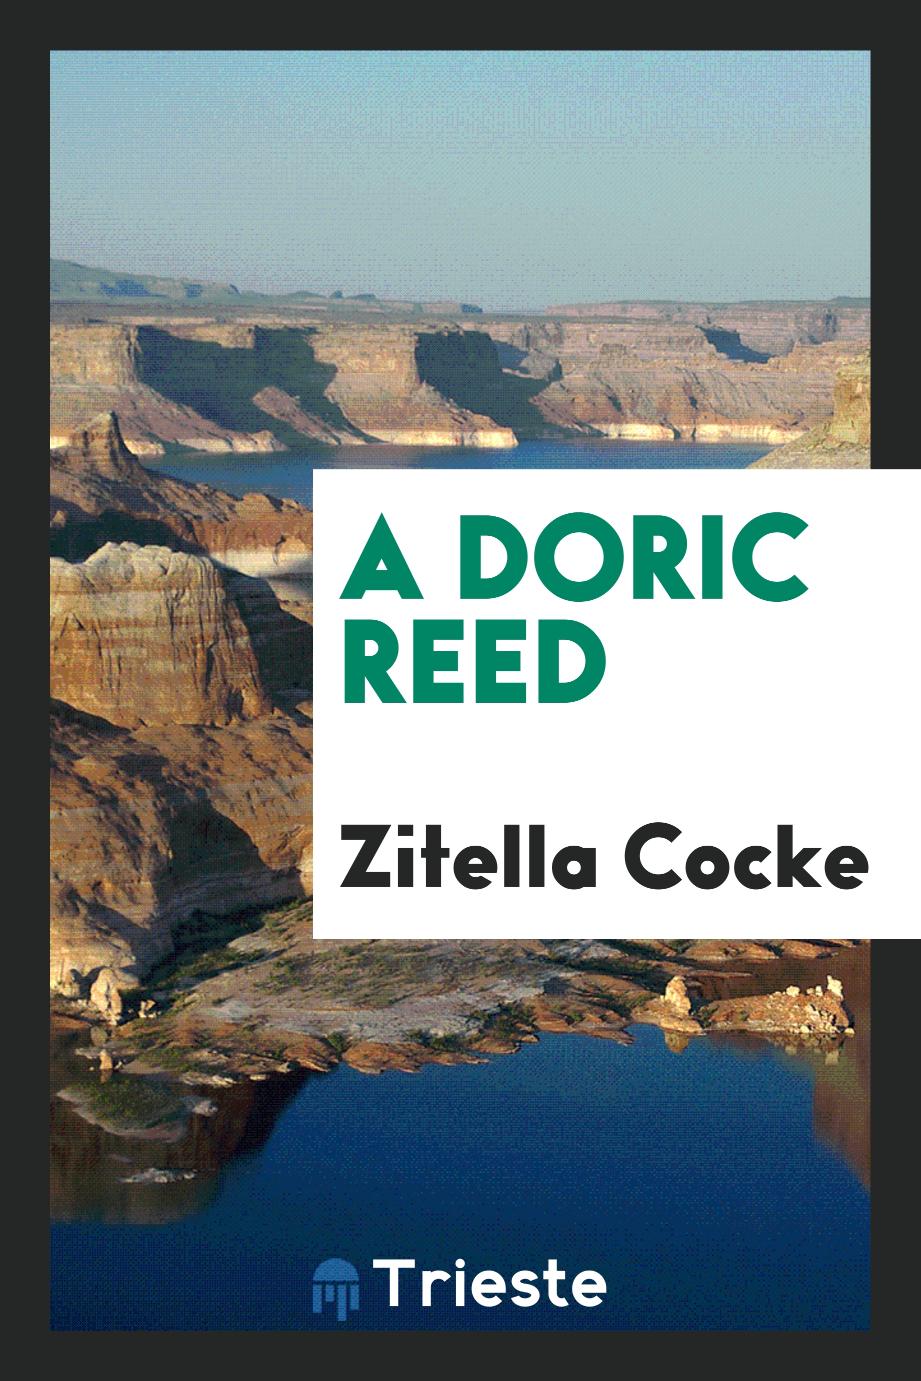 A Doric Reed